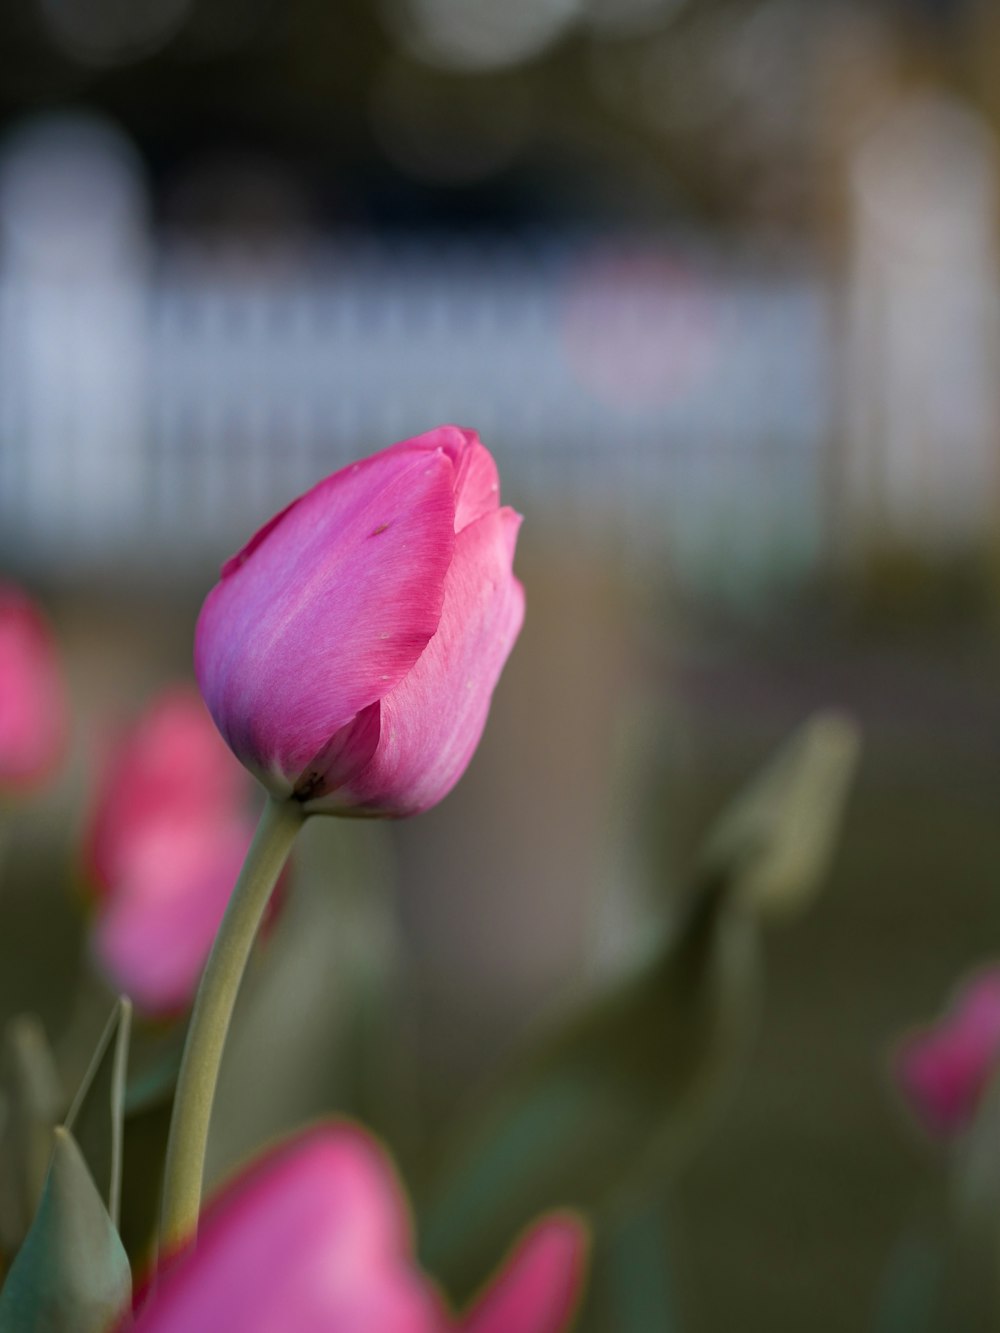 tilt shift lens photo of pink tulips